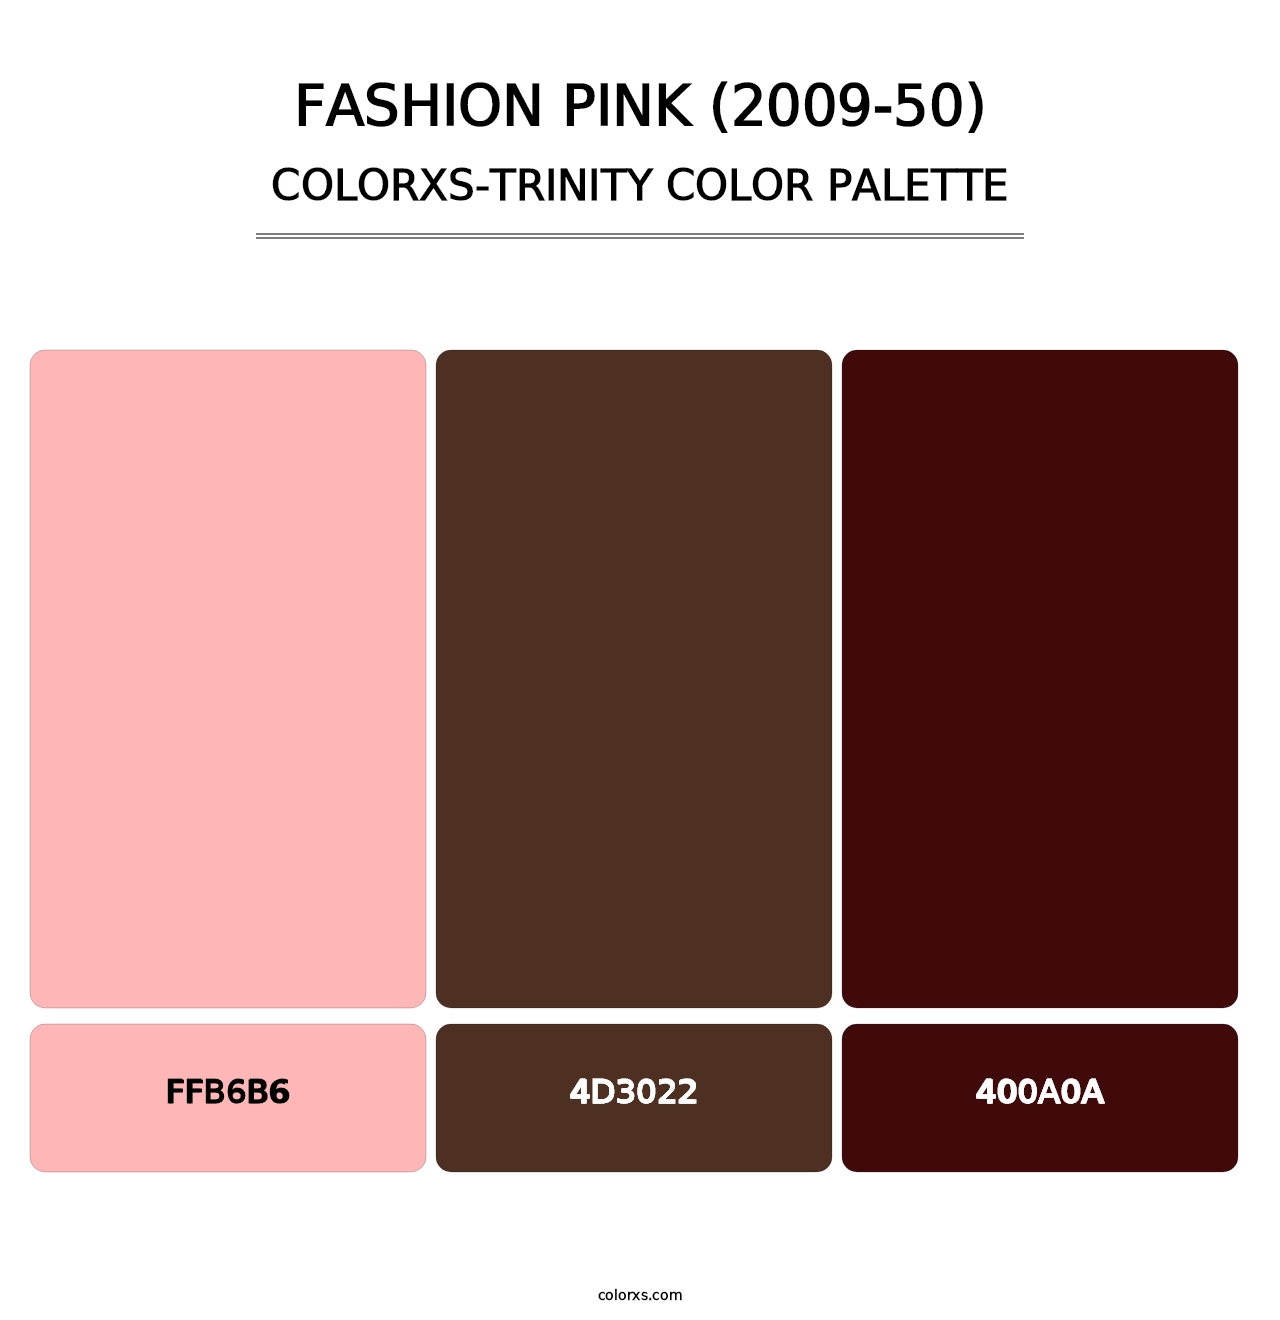 Fashion Pink (2009-50) - Colorxs Trinity Palette